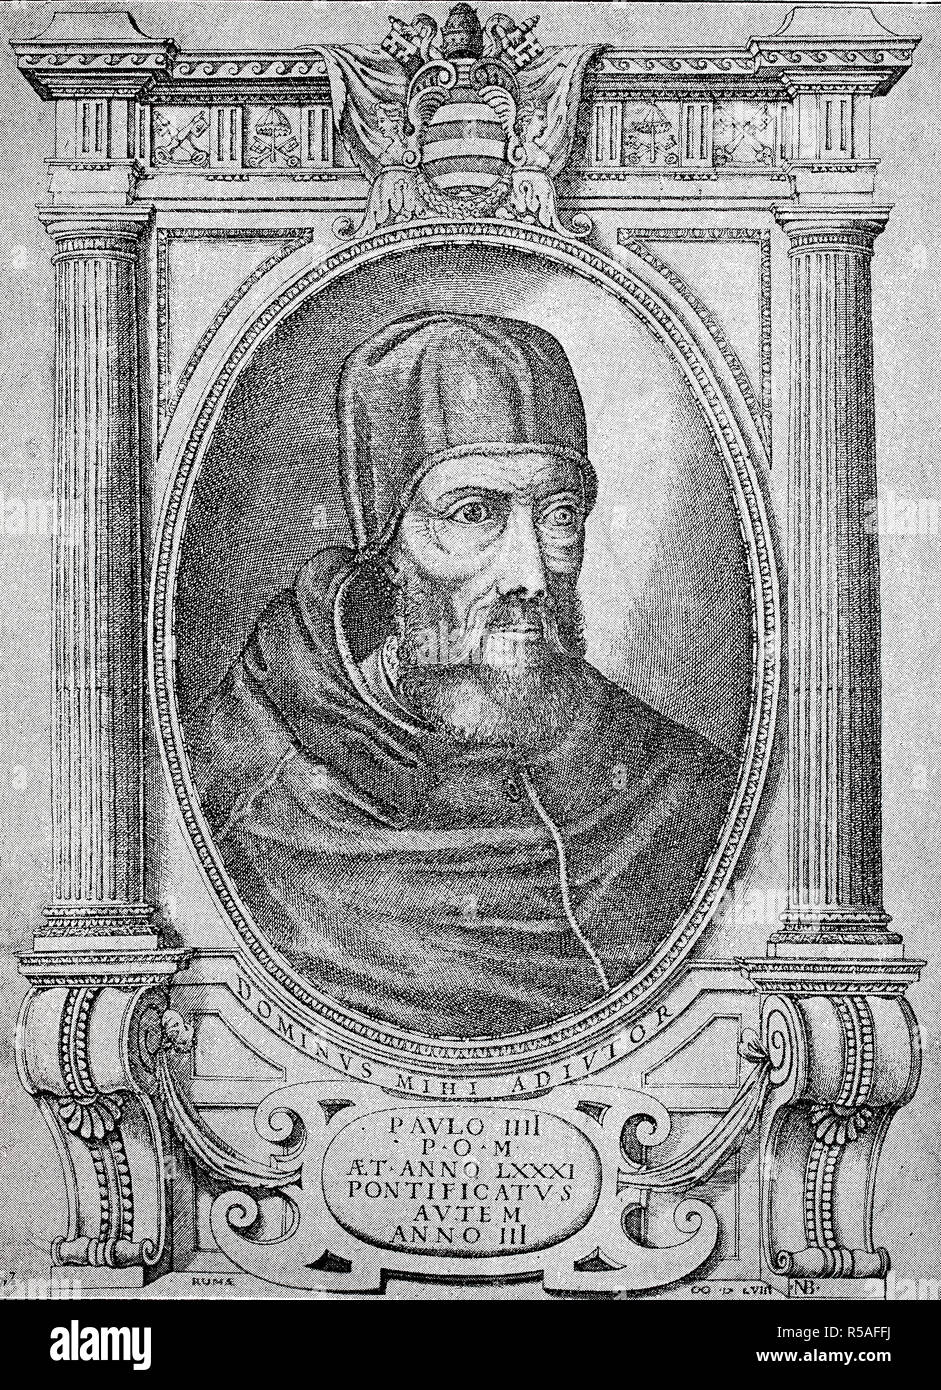 Paul IV, de son vrai nom Gian Pietro Carafa, OTheat 28 juin 1476, le 18 août 1559, le Pape la gravure sur cuivre, Italie Banque D'Images